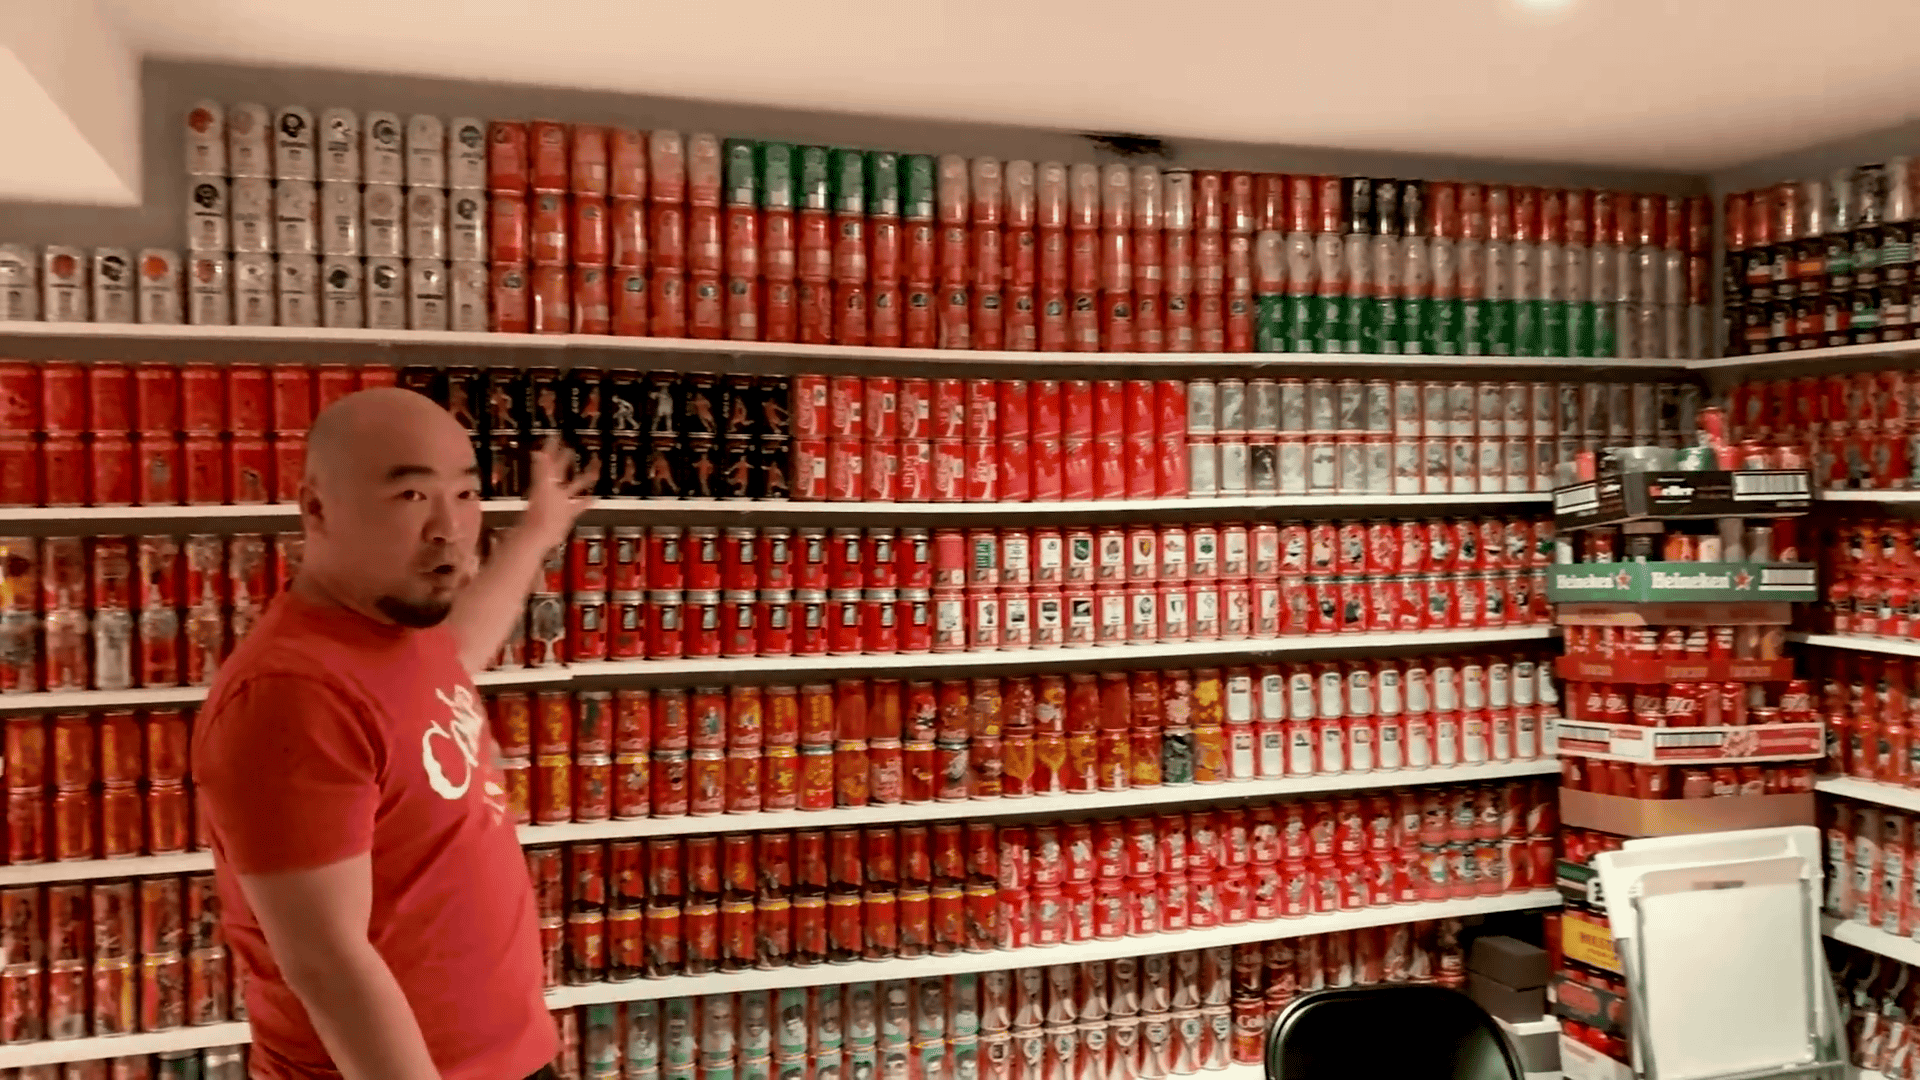 世界記録となった「1万1308点のコカ・コーラ缶コレクション」が圧倒的